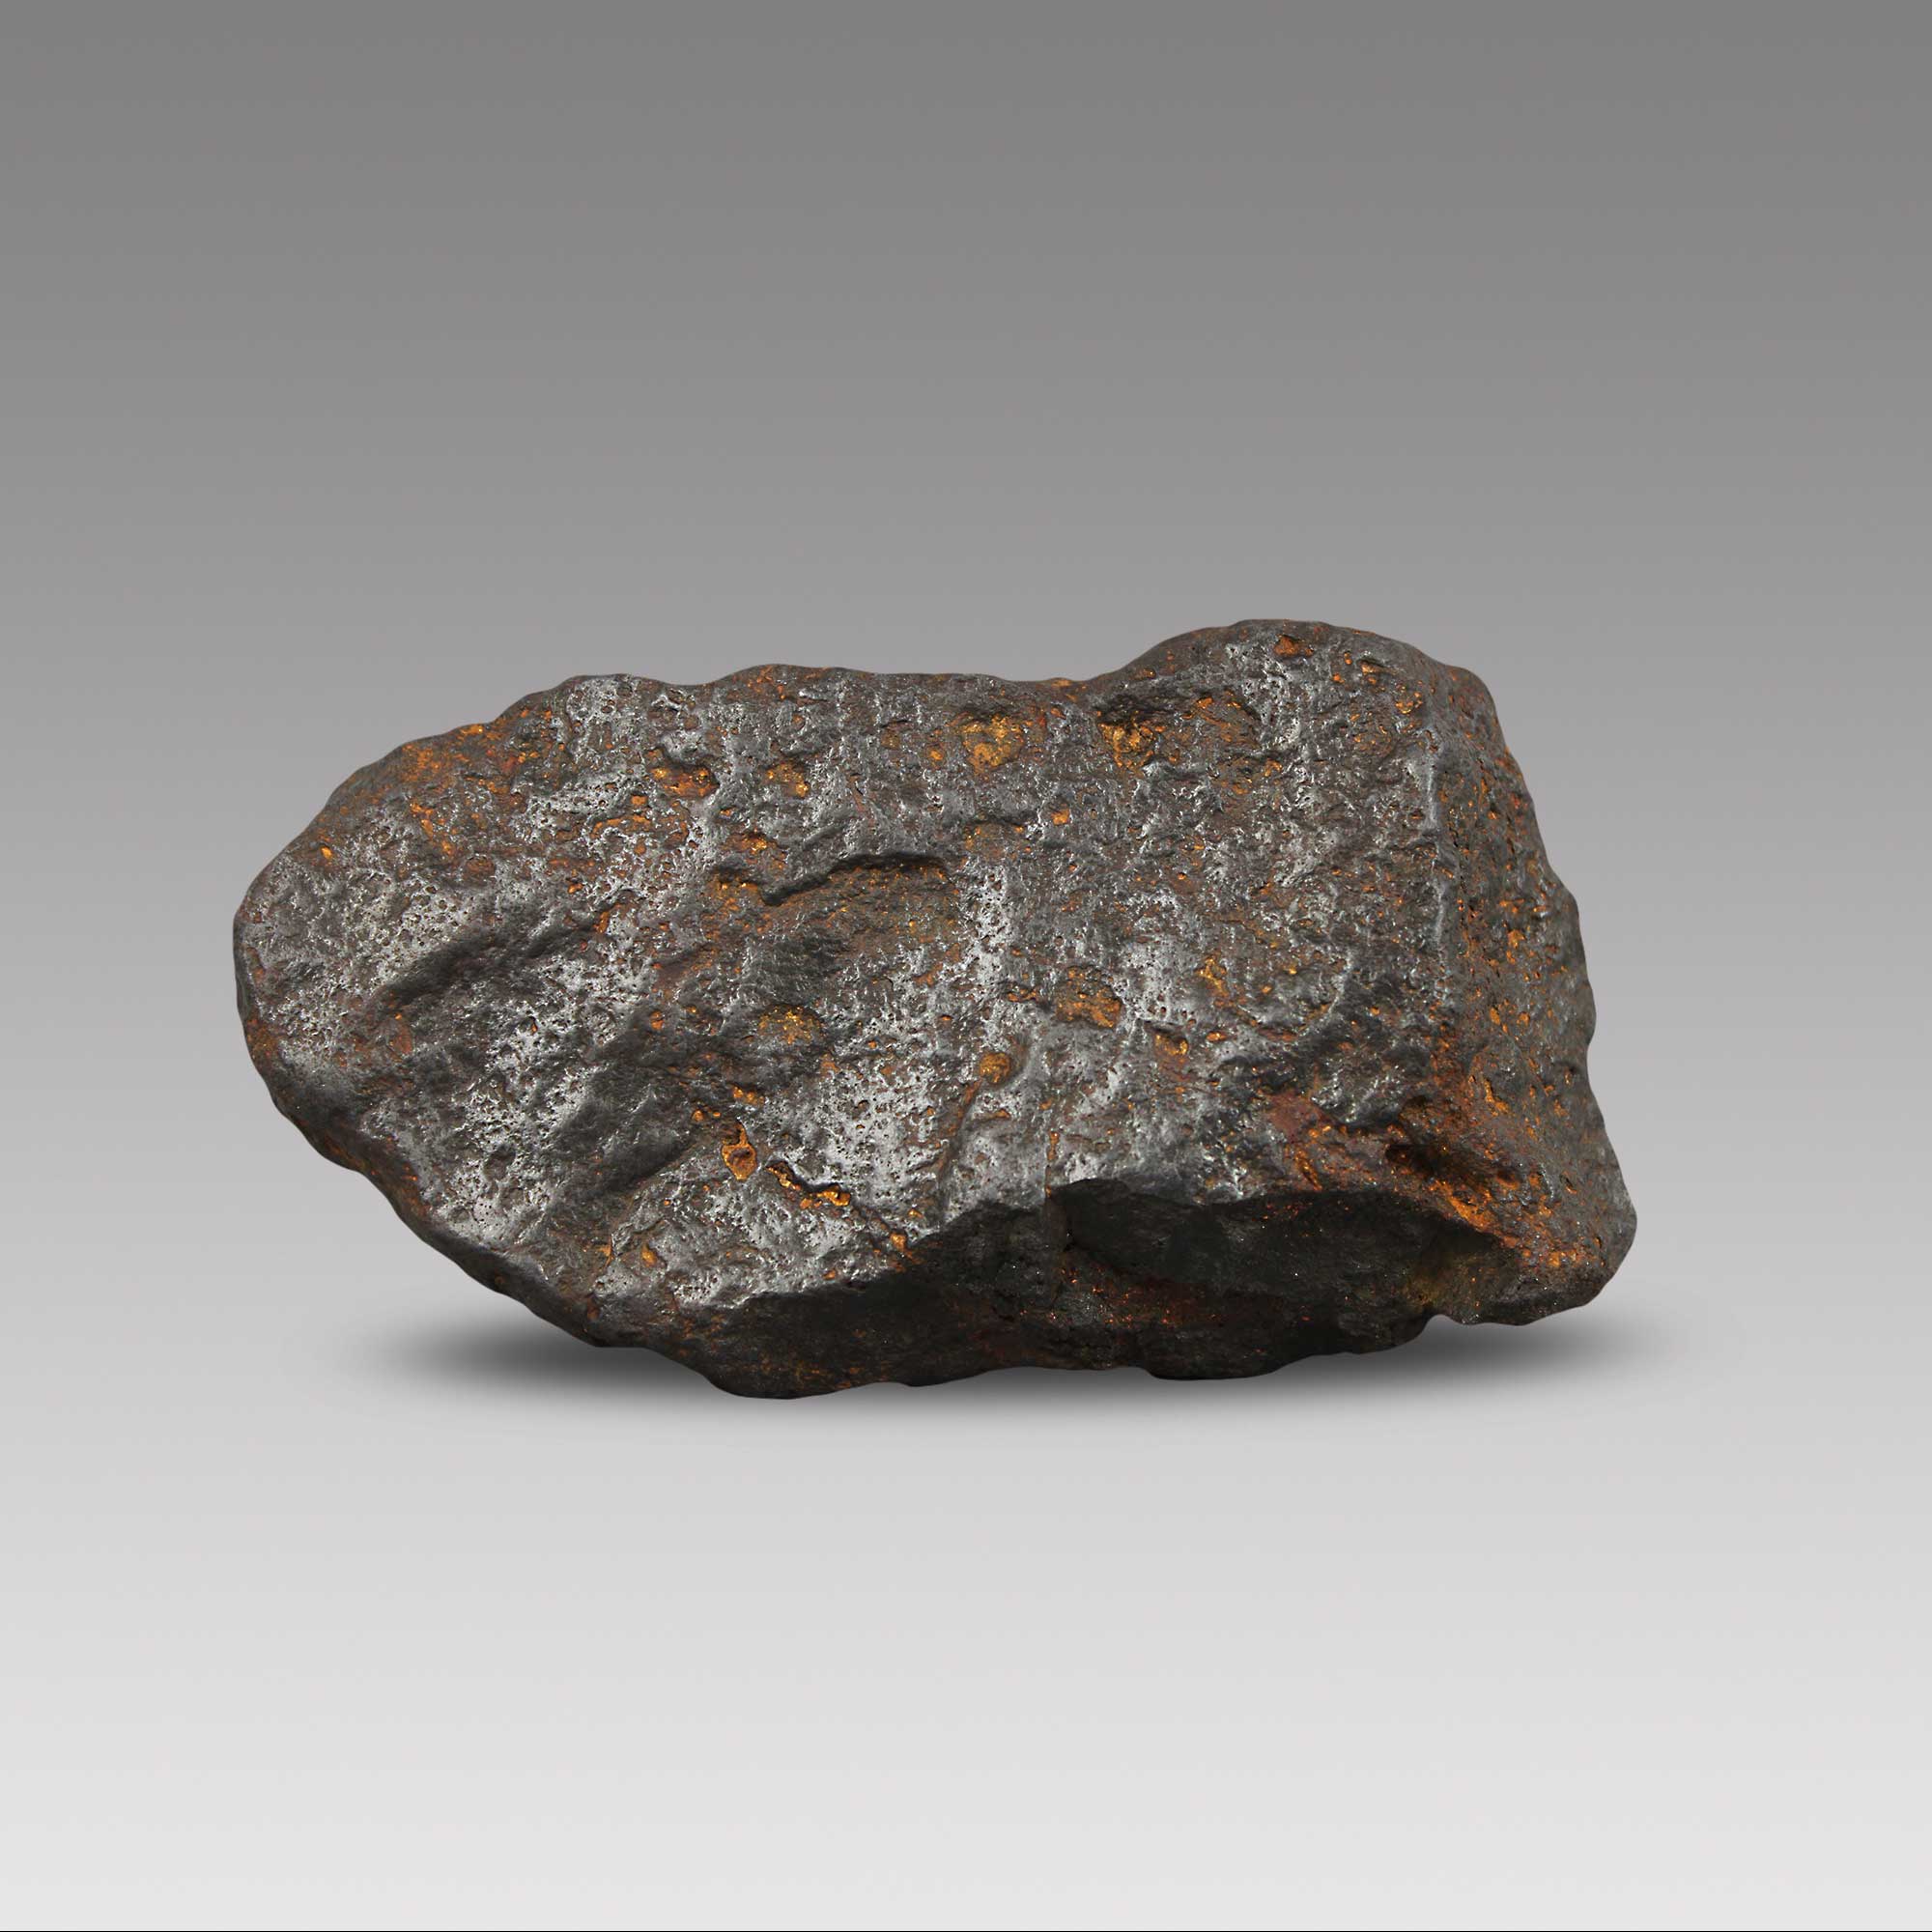 铁陨石是原始未分化的陨石,含有极其丰富并且复杂的结构成分,自古